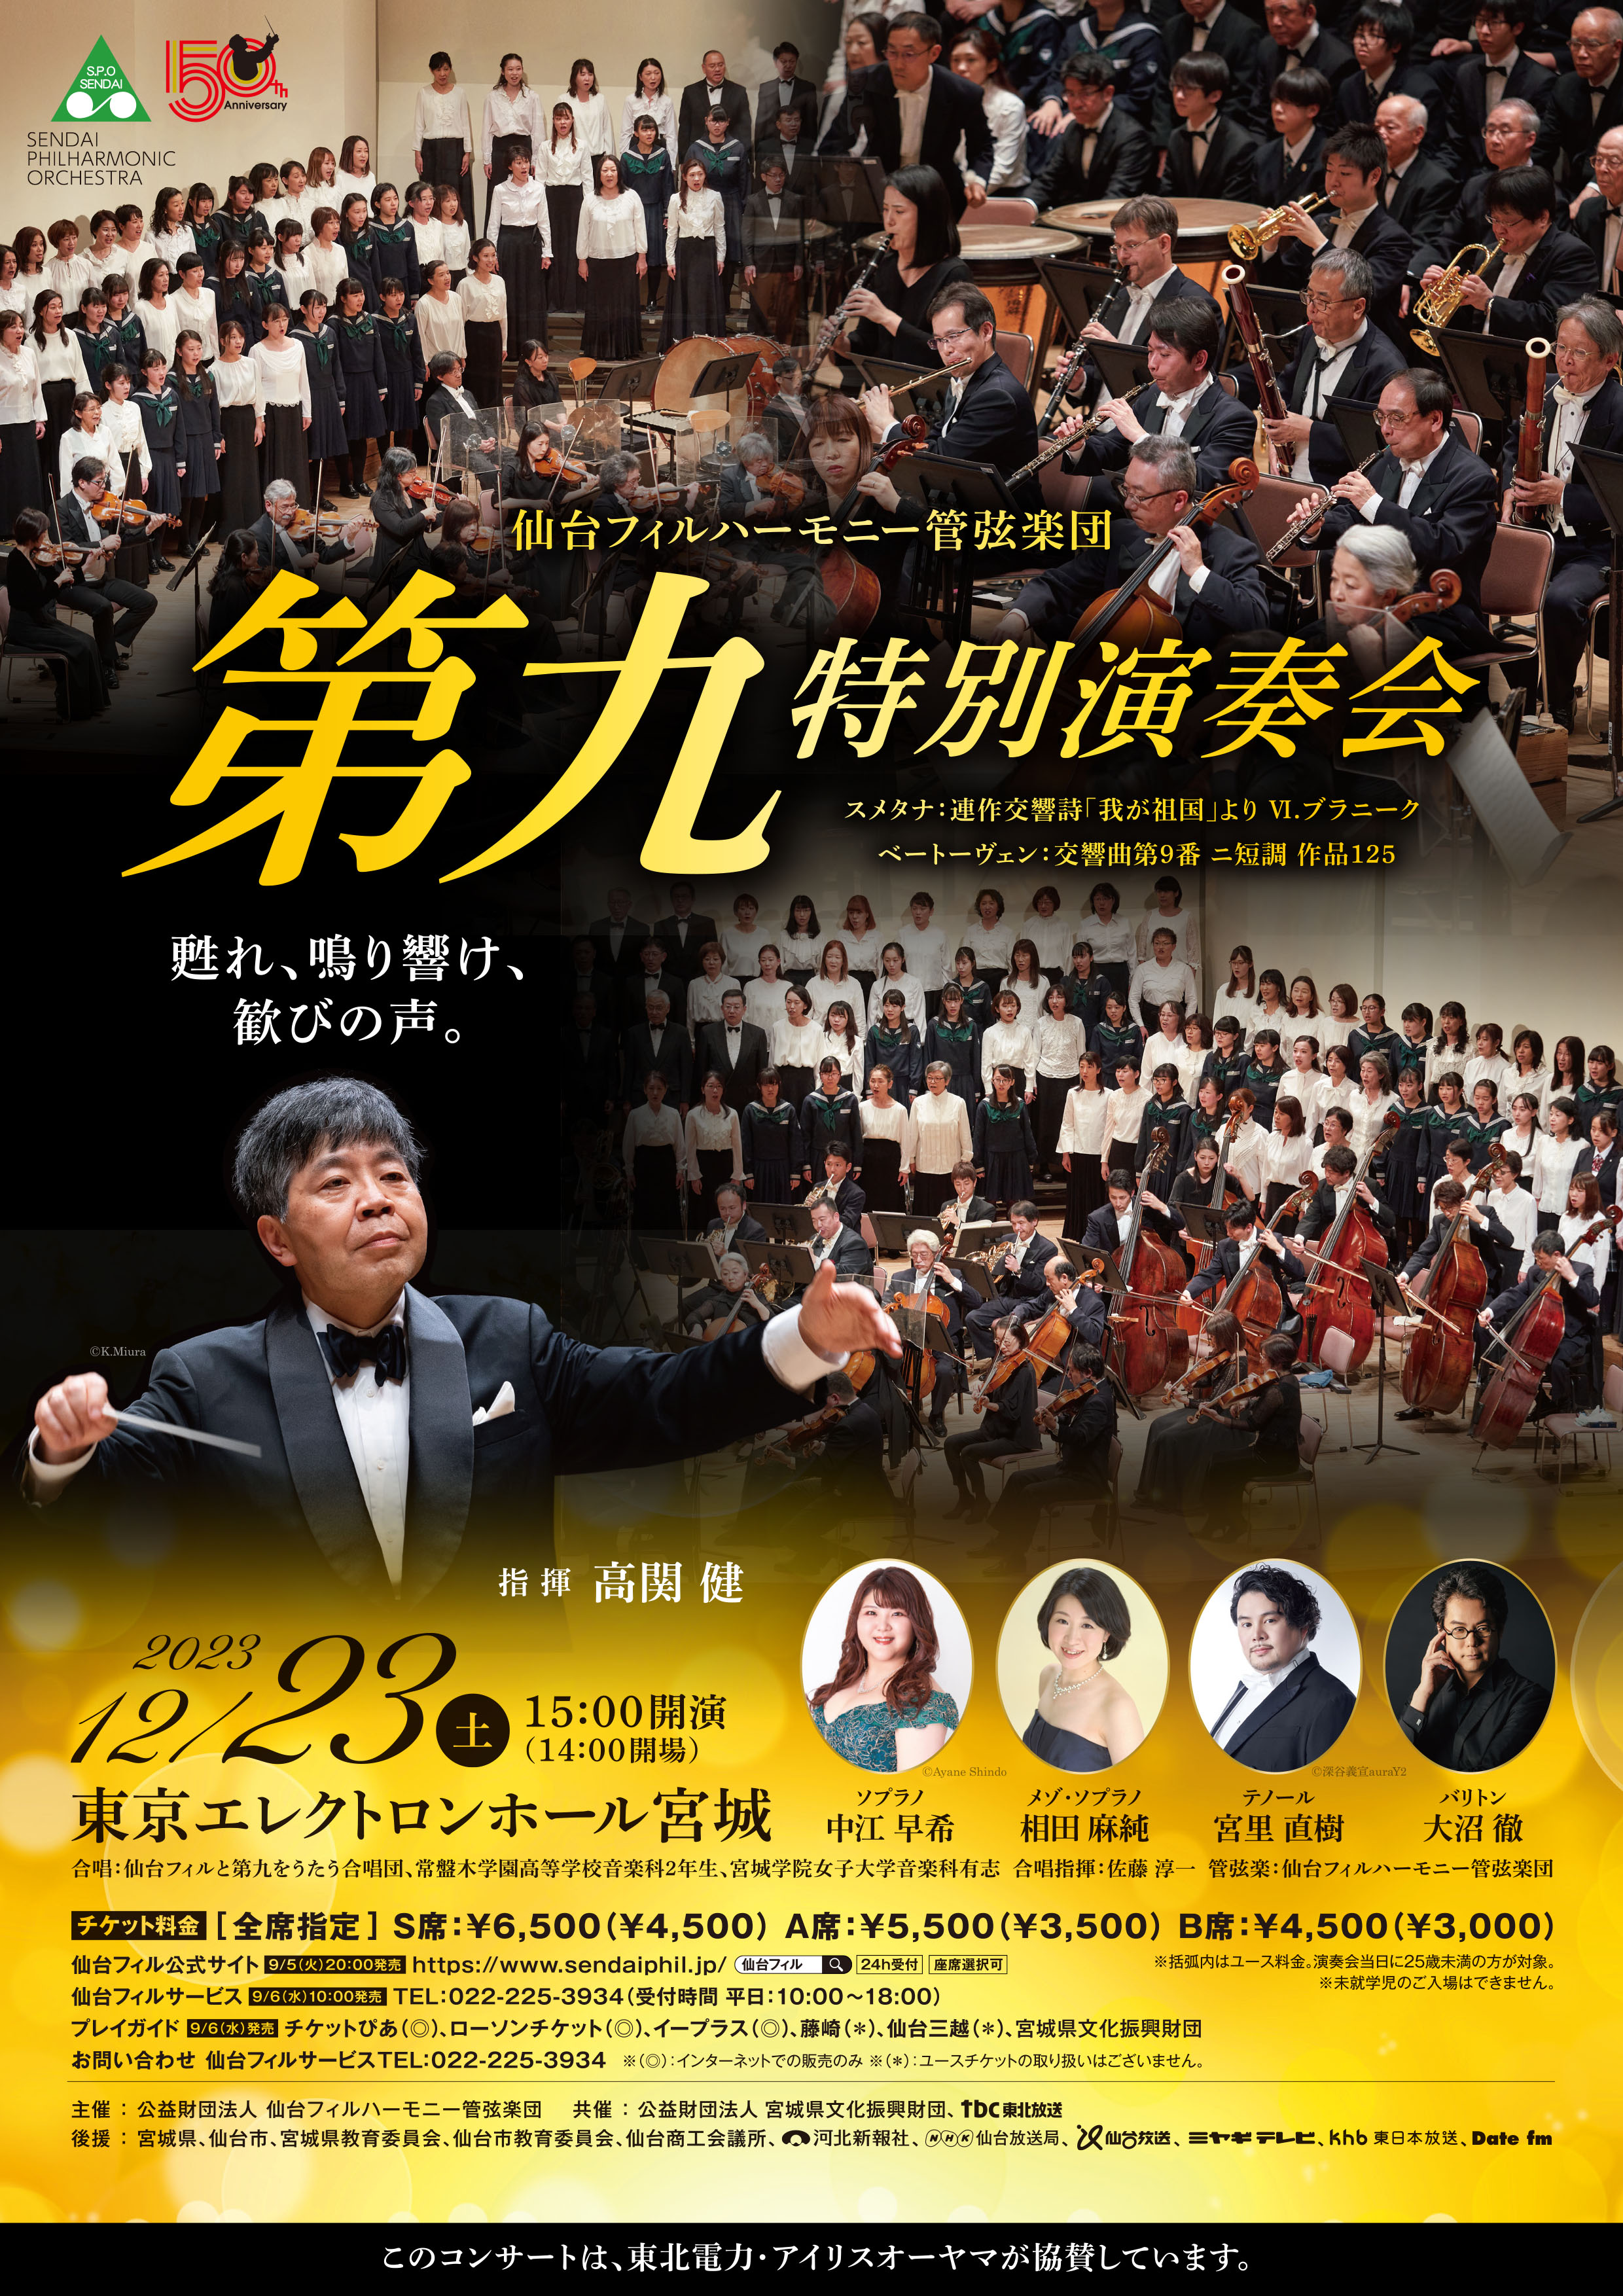 仙台フィルハーモニー管弦楽団「第九」特別演奏会のフライヤー画像